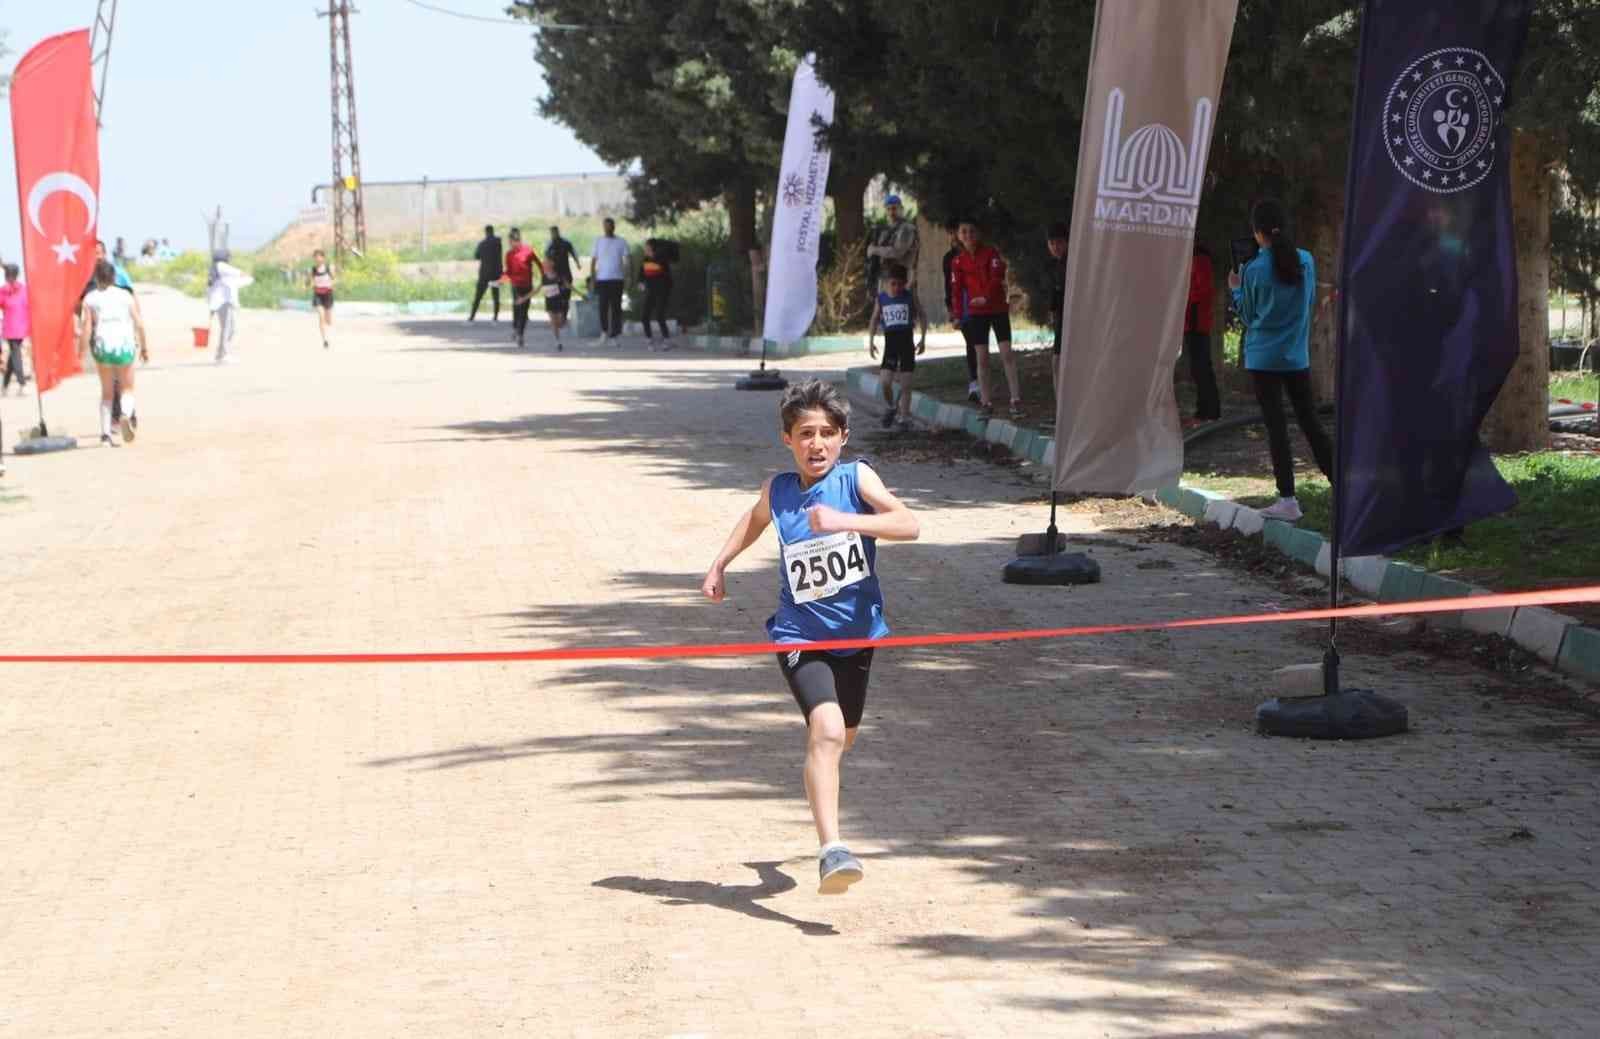 Mardin’de öğrenciler final için koştu